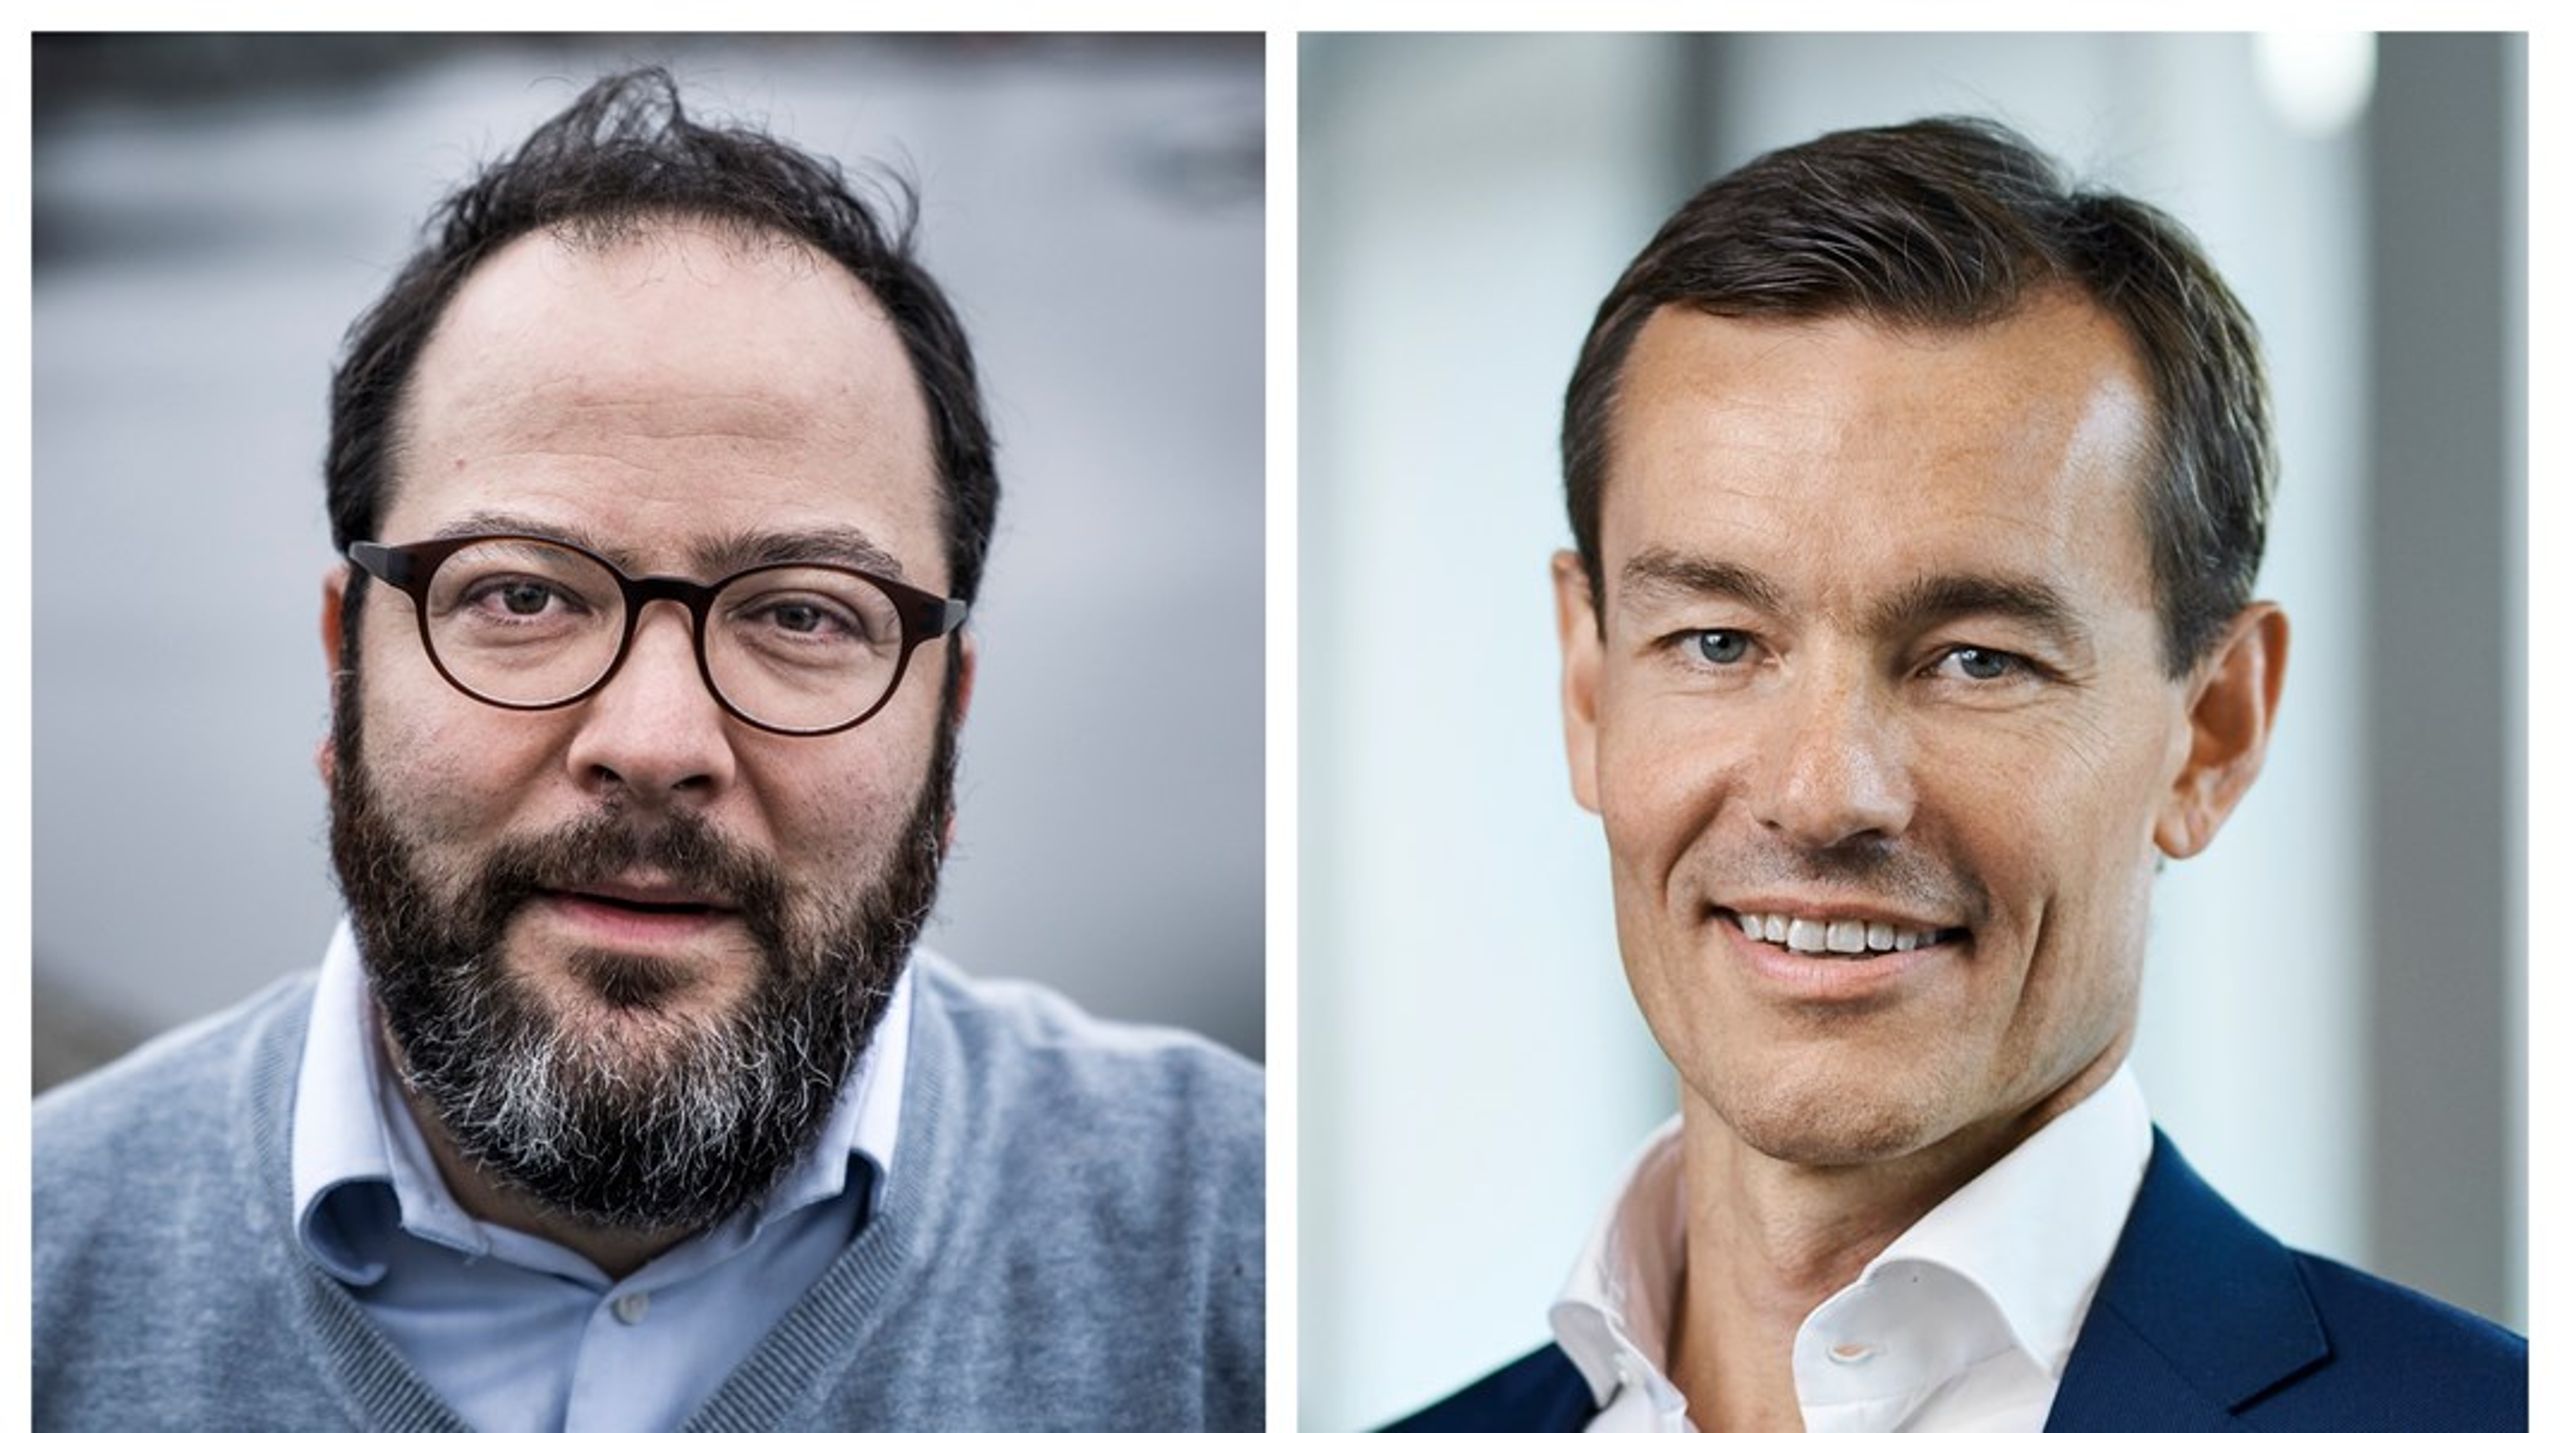 Dansk Iværksætterforening og Vækstfonden har deres sag for med at sikre større diversitet i organisationerne, skriver Peter Kofler (højre) og Rolf Kjærgaard (venstre).&nbsp;